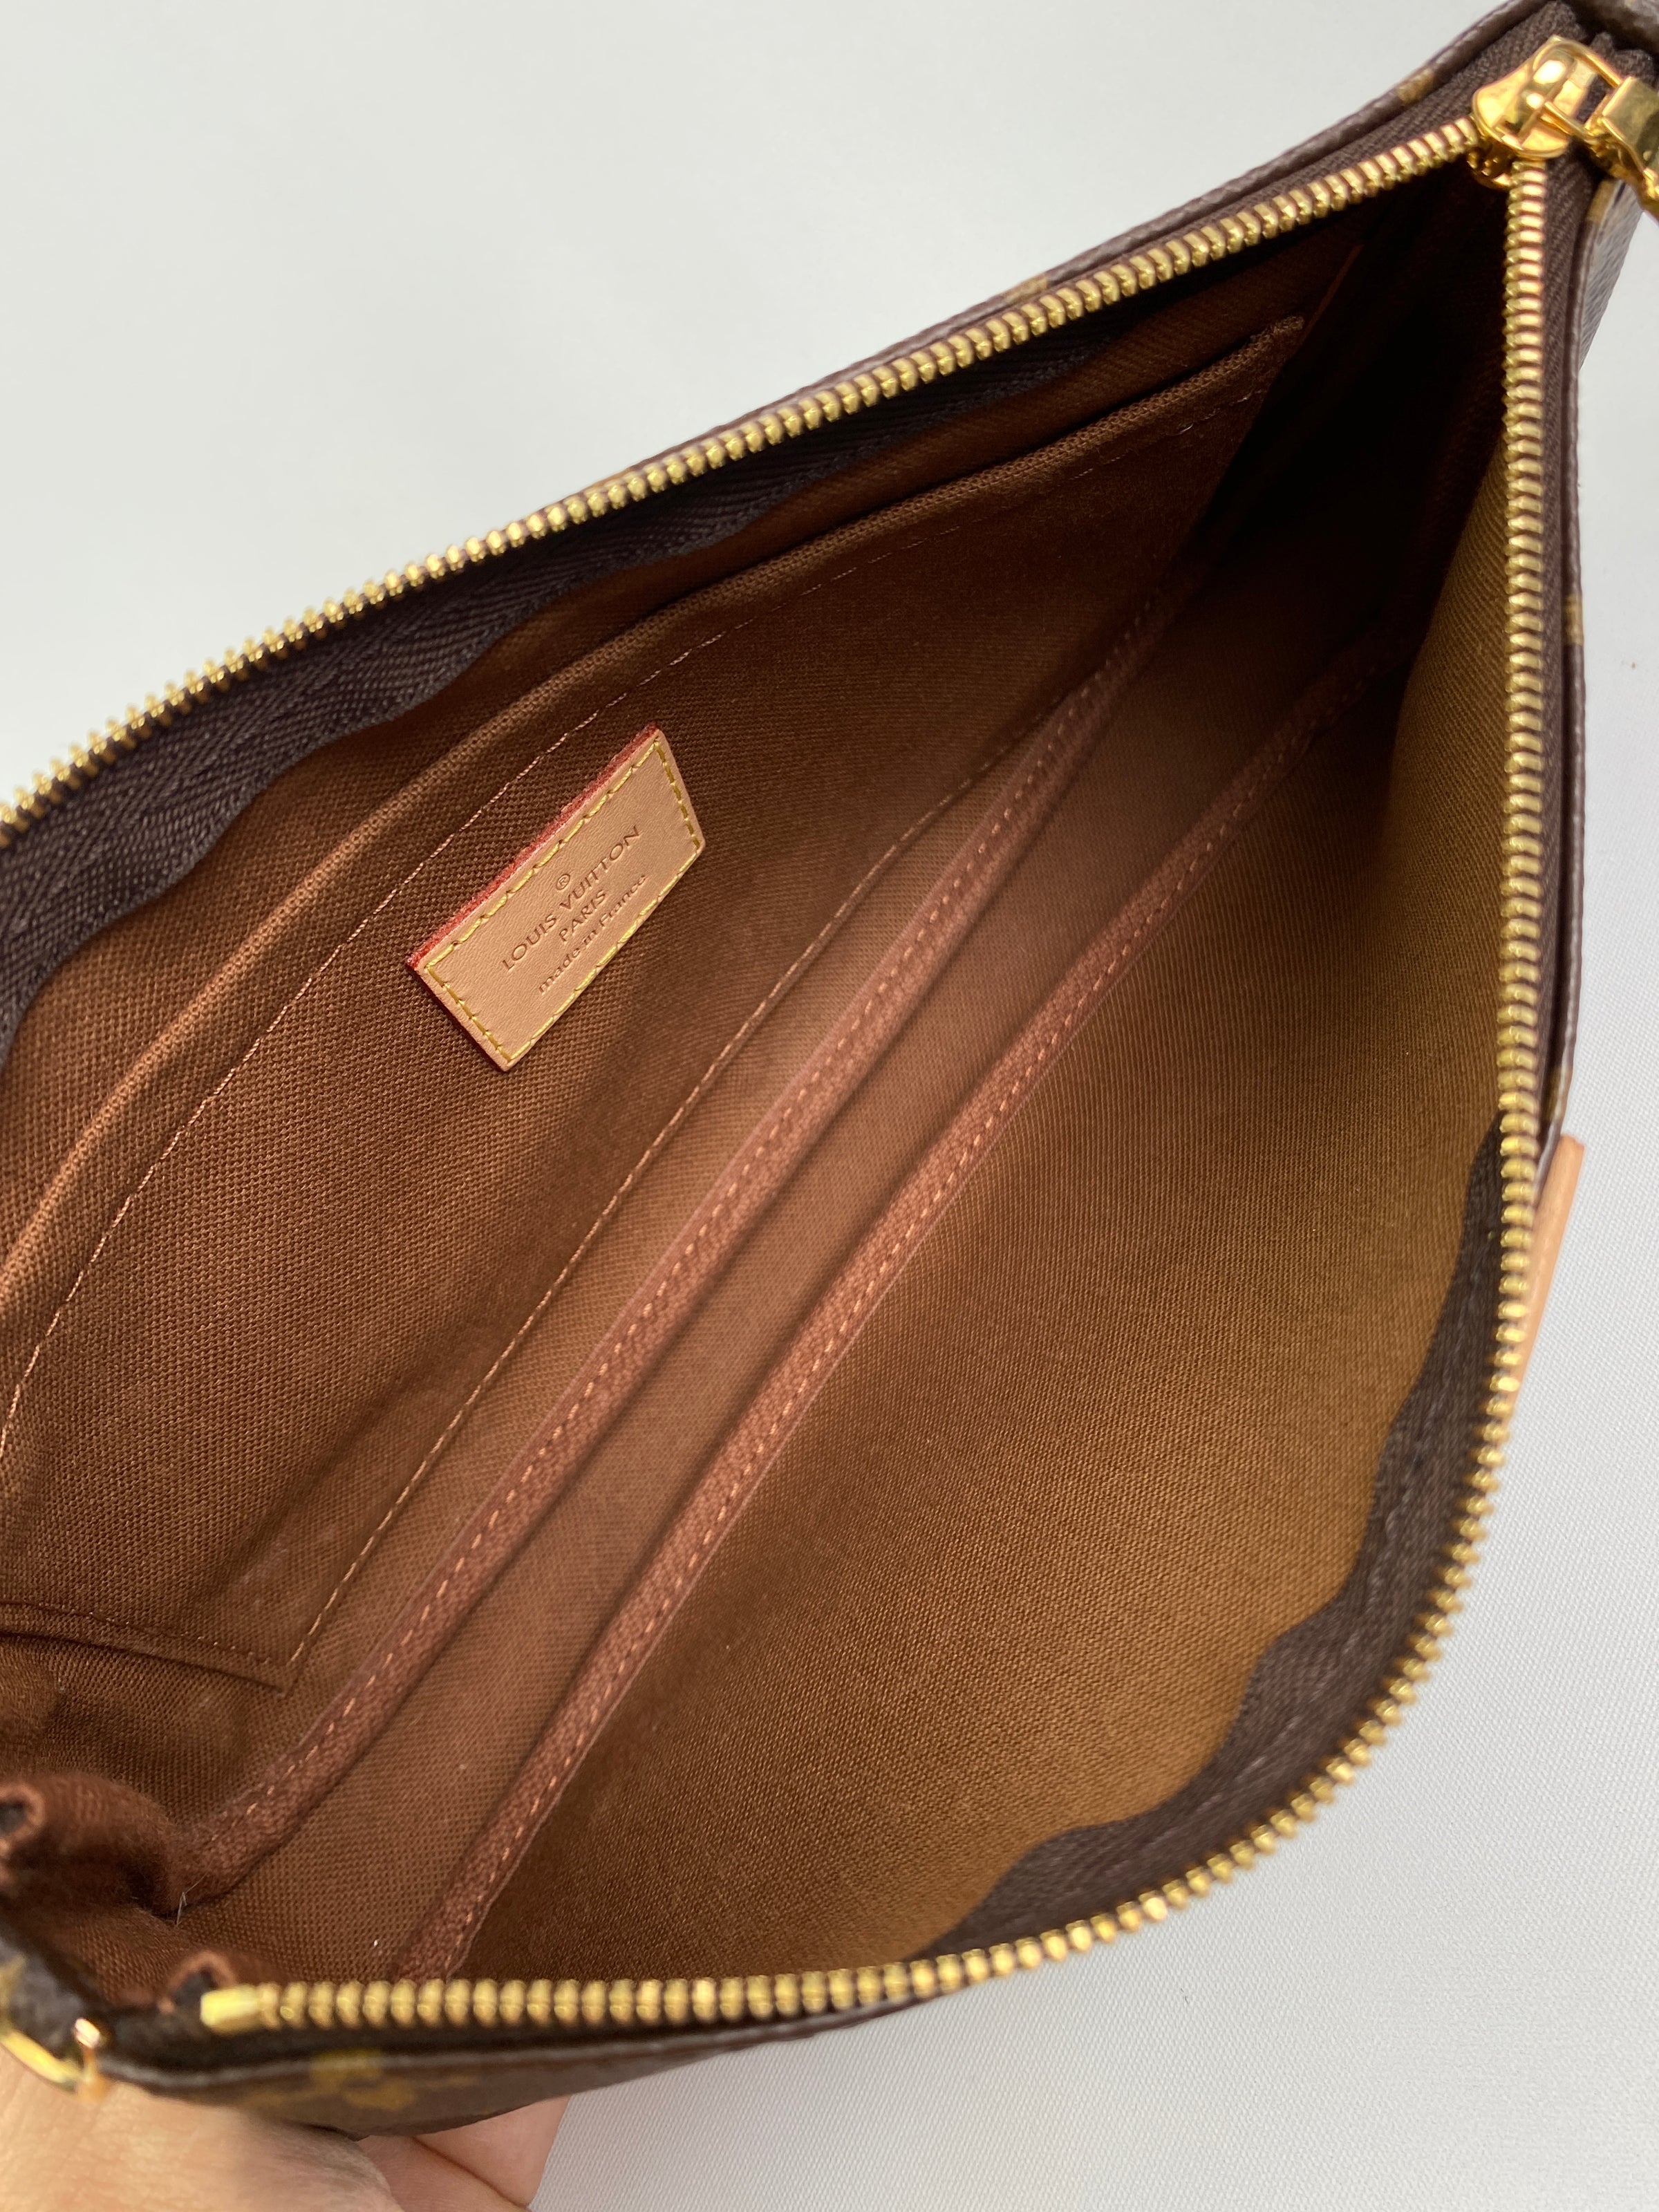 Louis Vuitton Monogram Canvas Multi-Pochette Accessories Bag Louis